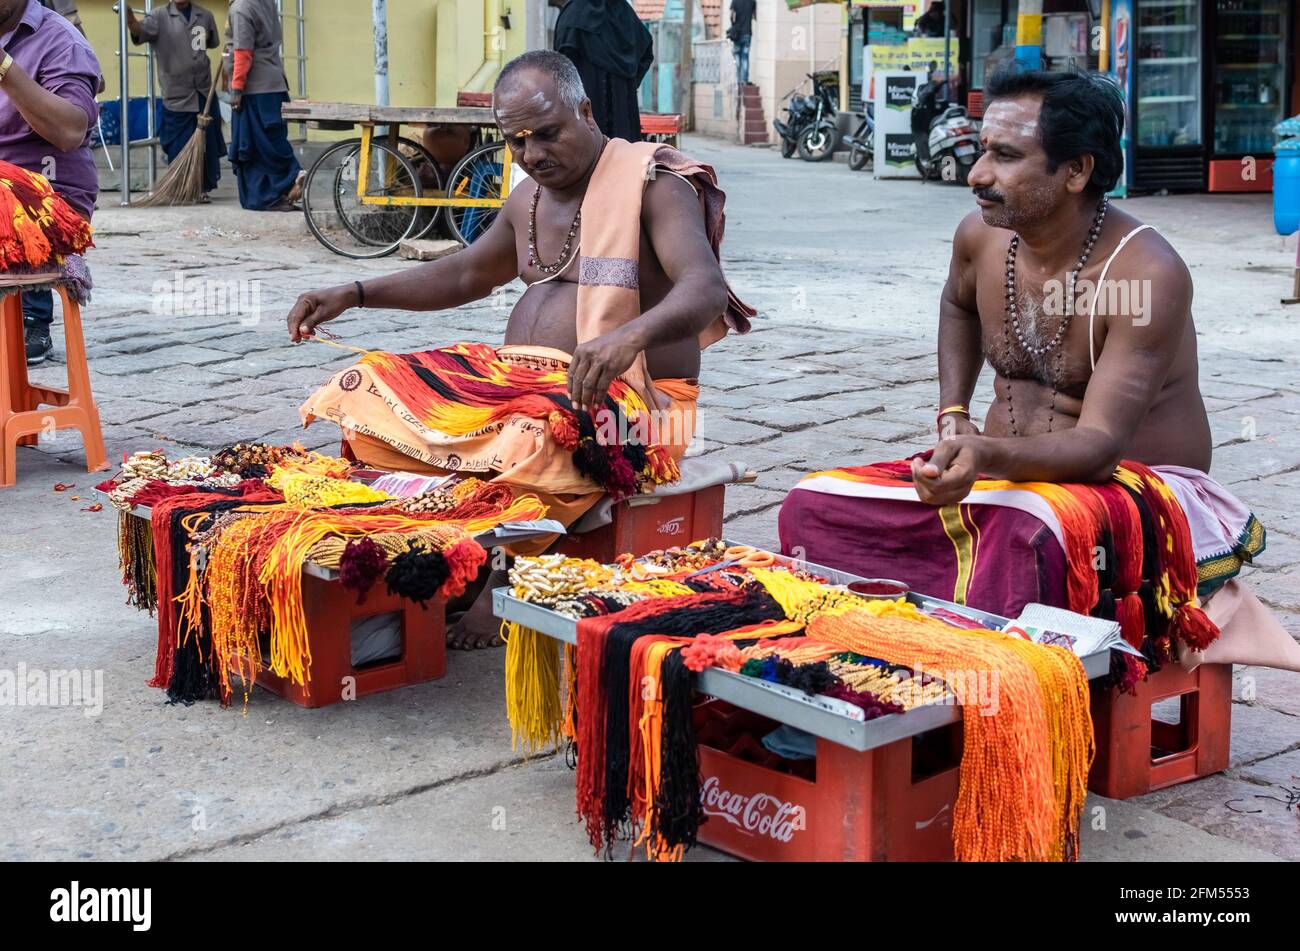 Mysuru, Karnataka, Inde - janvier 2019 : des hommes indiens en tenue traditionnelle vendent des rubans colorés pour des rituels hindous à l'ancien temple de Chamundi Banque D'Images